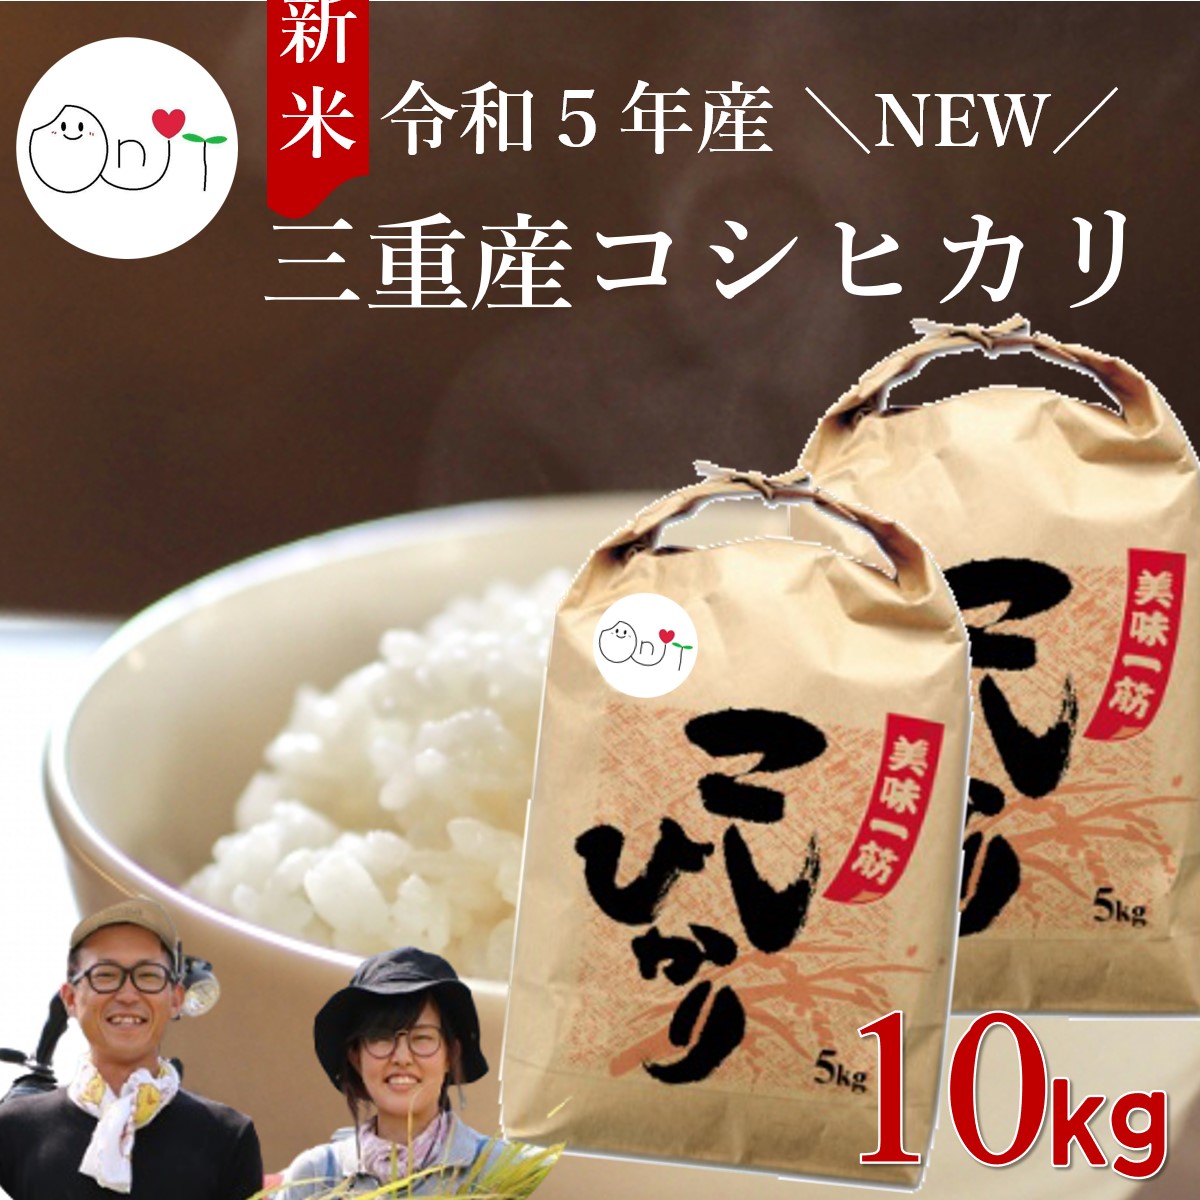 三重県産 コシヒカリ 10kg(5kg×2) 送料無料 新米 [玄米 7分づき 5分